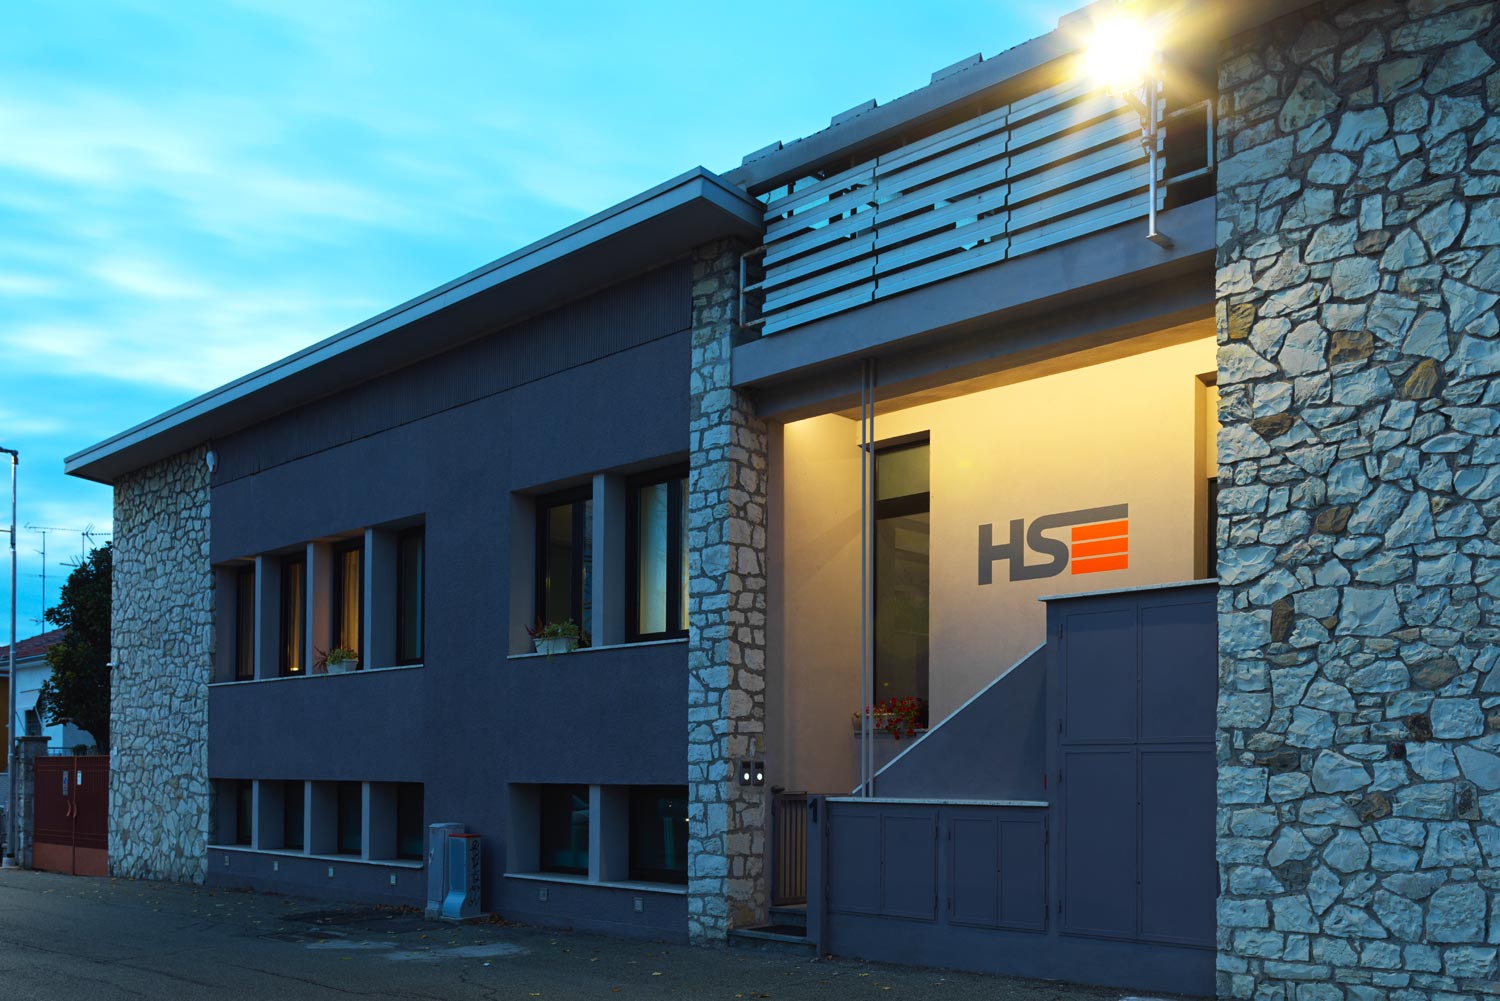 hs-hardware-servizi-voghera-noleggio-stampanti-ufficio-soluzioni-it-digitalizzazione-aziendale-25